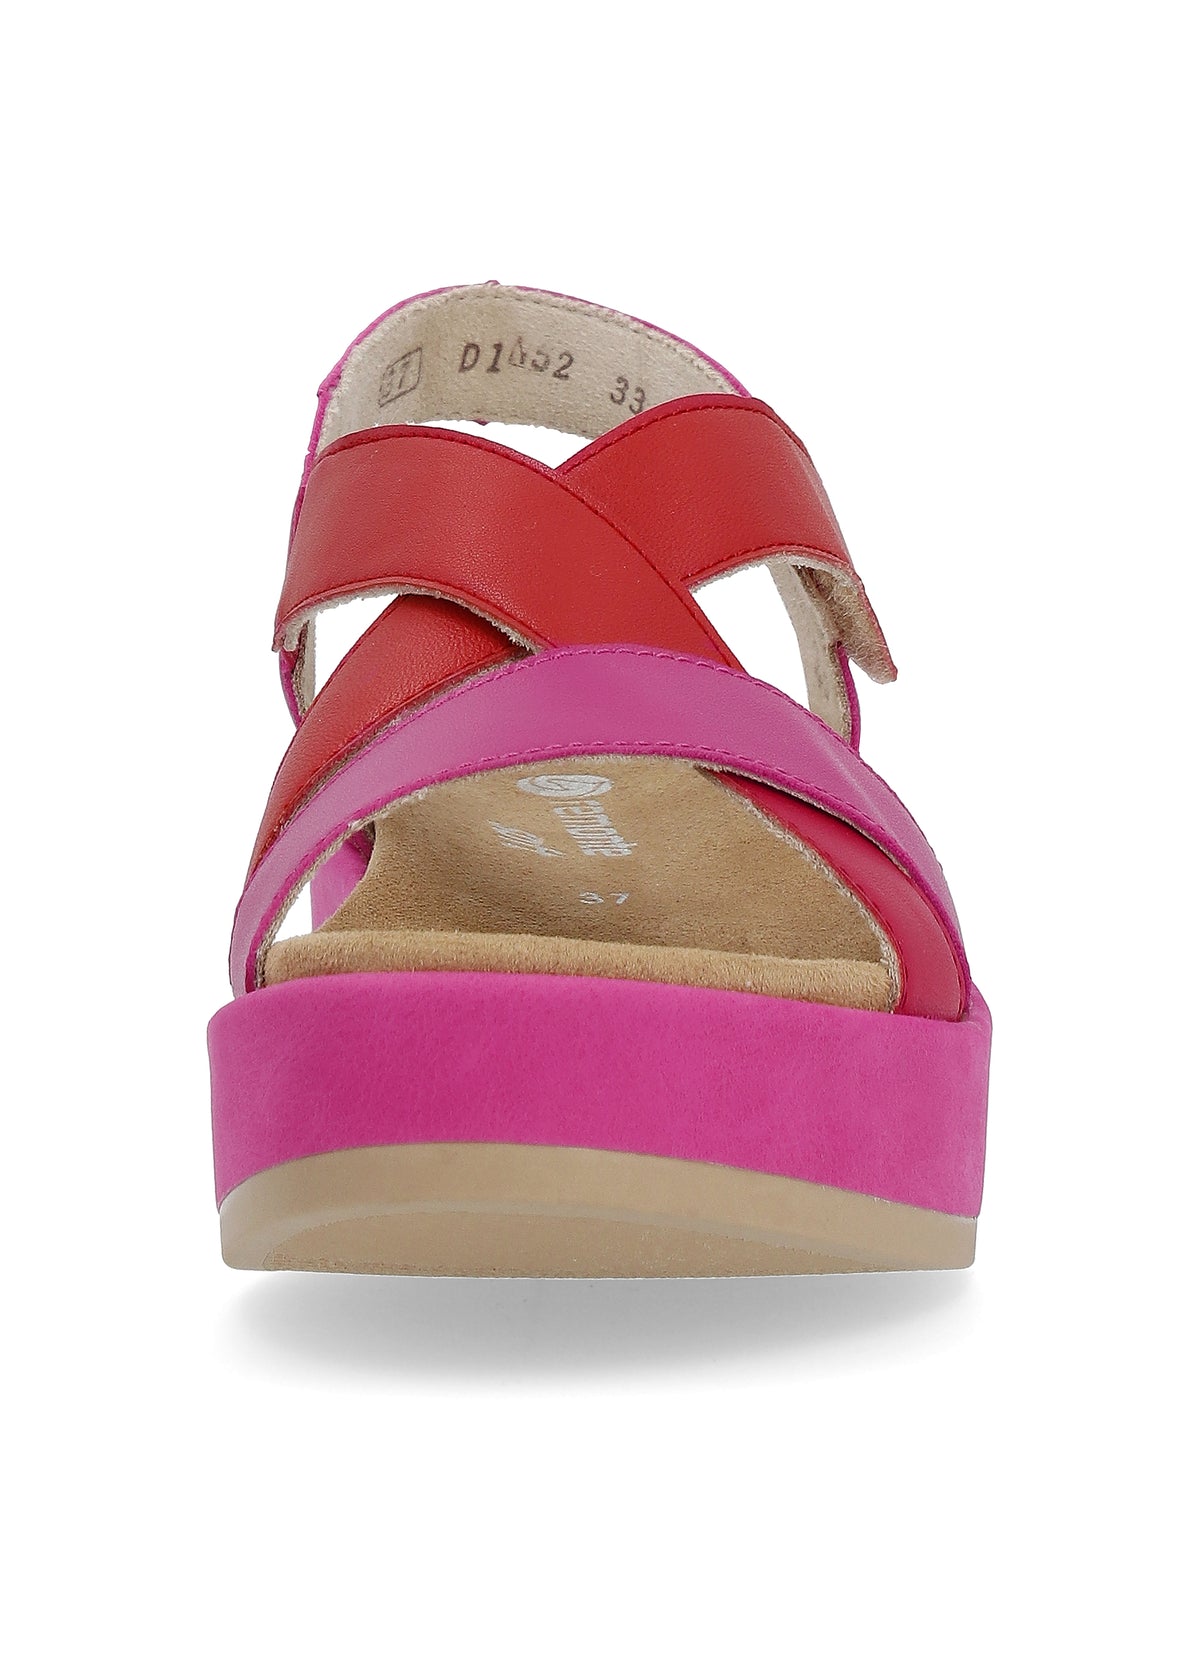 Sandaalit paksulla pohjalla - pinkki, punainen, tarrakiinnitys